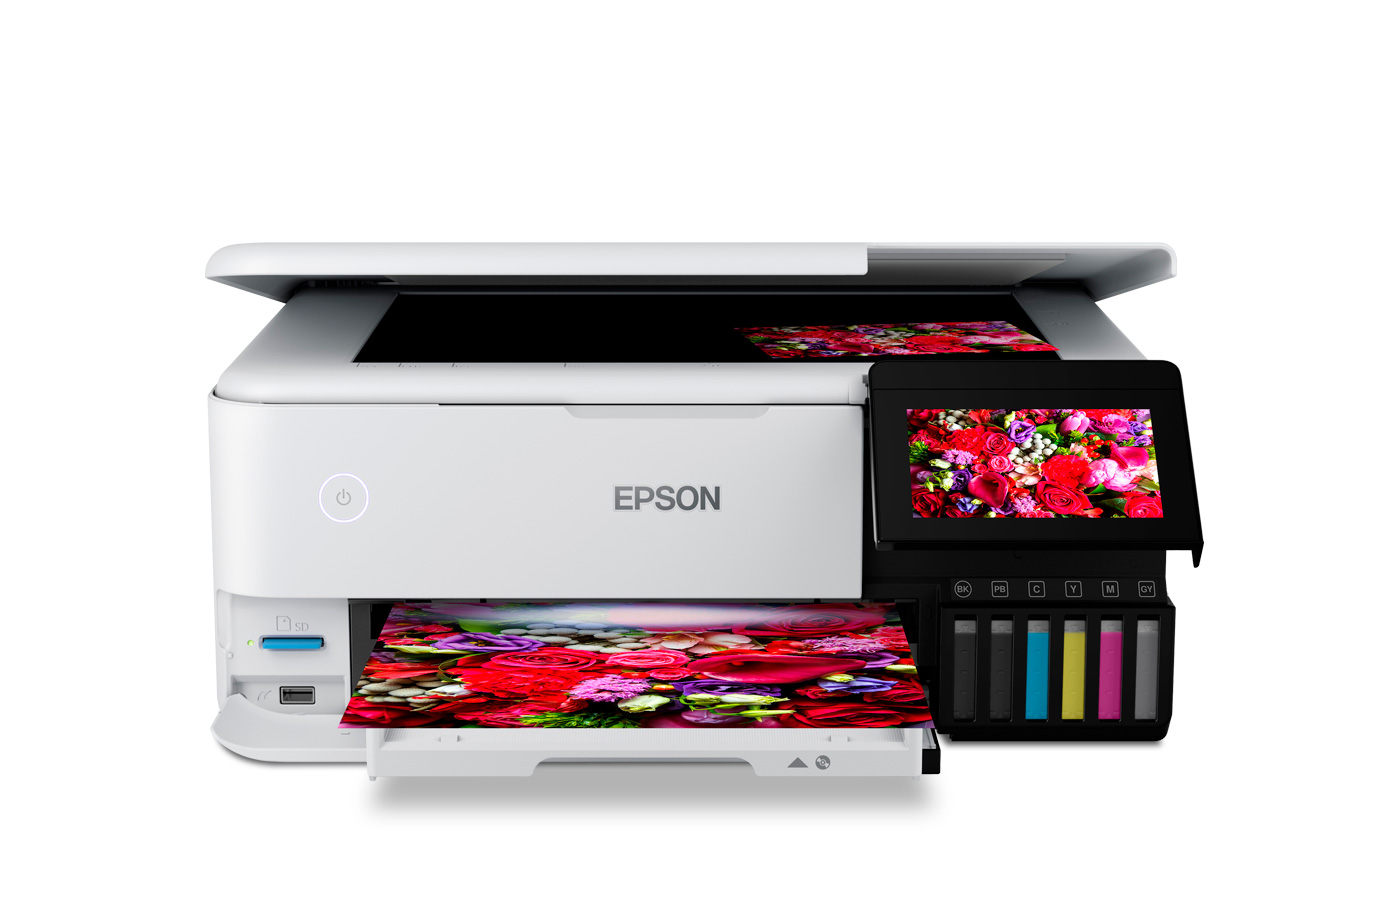 C277011B | Epson Stylus Pro 9000 Print Engine | Large Format 